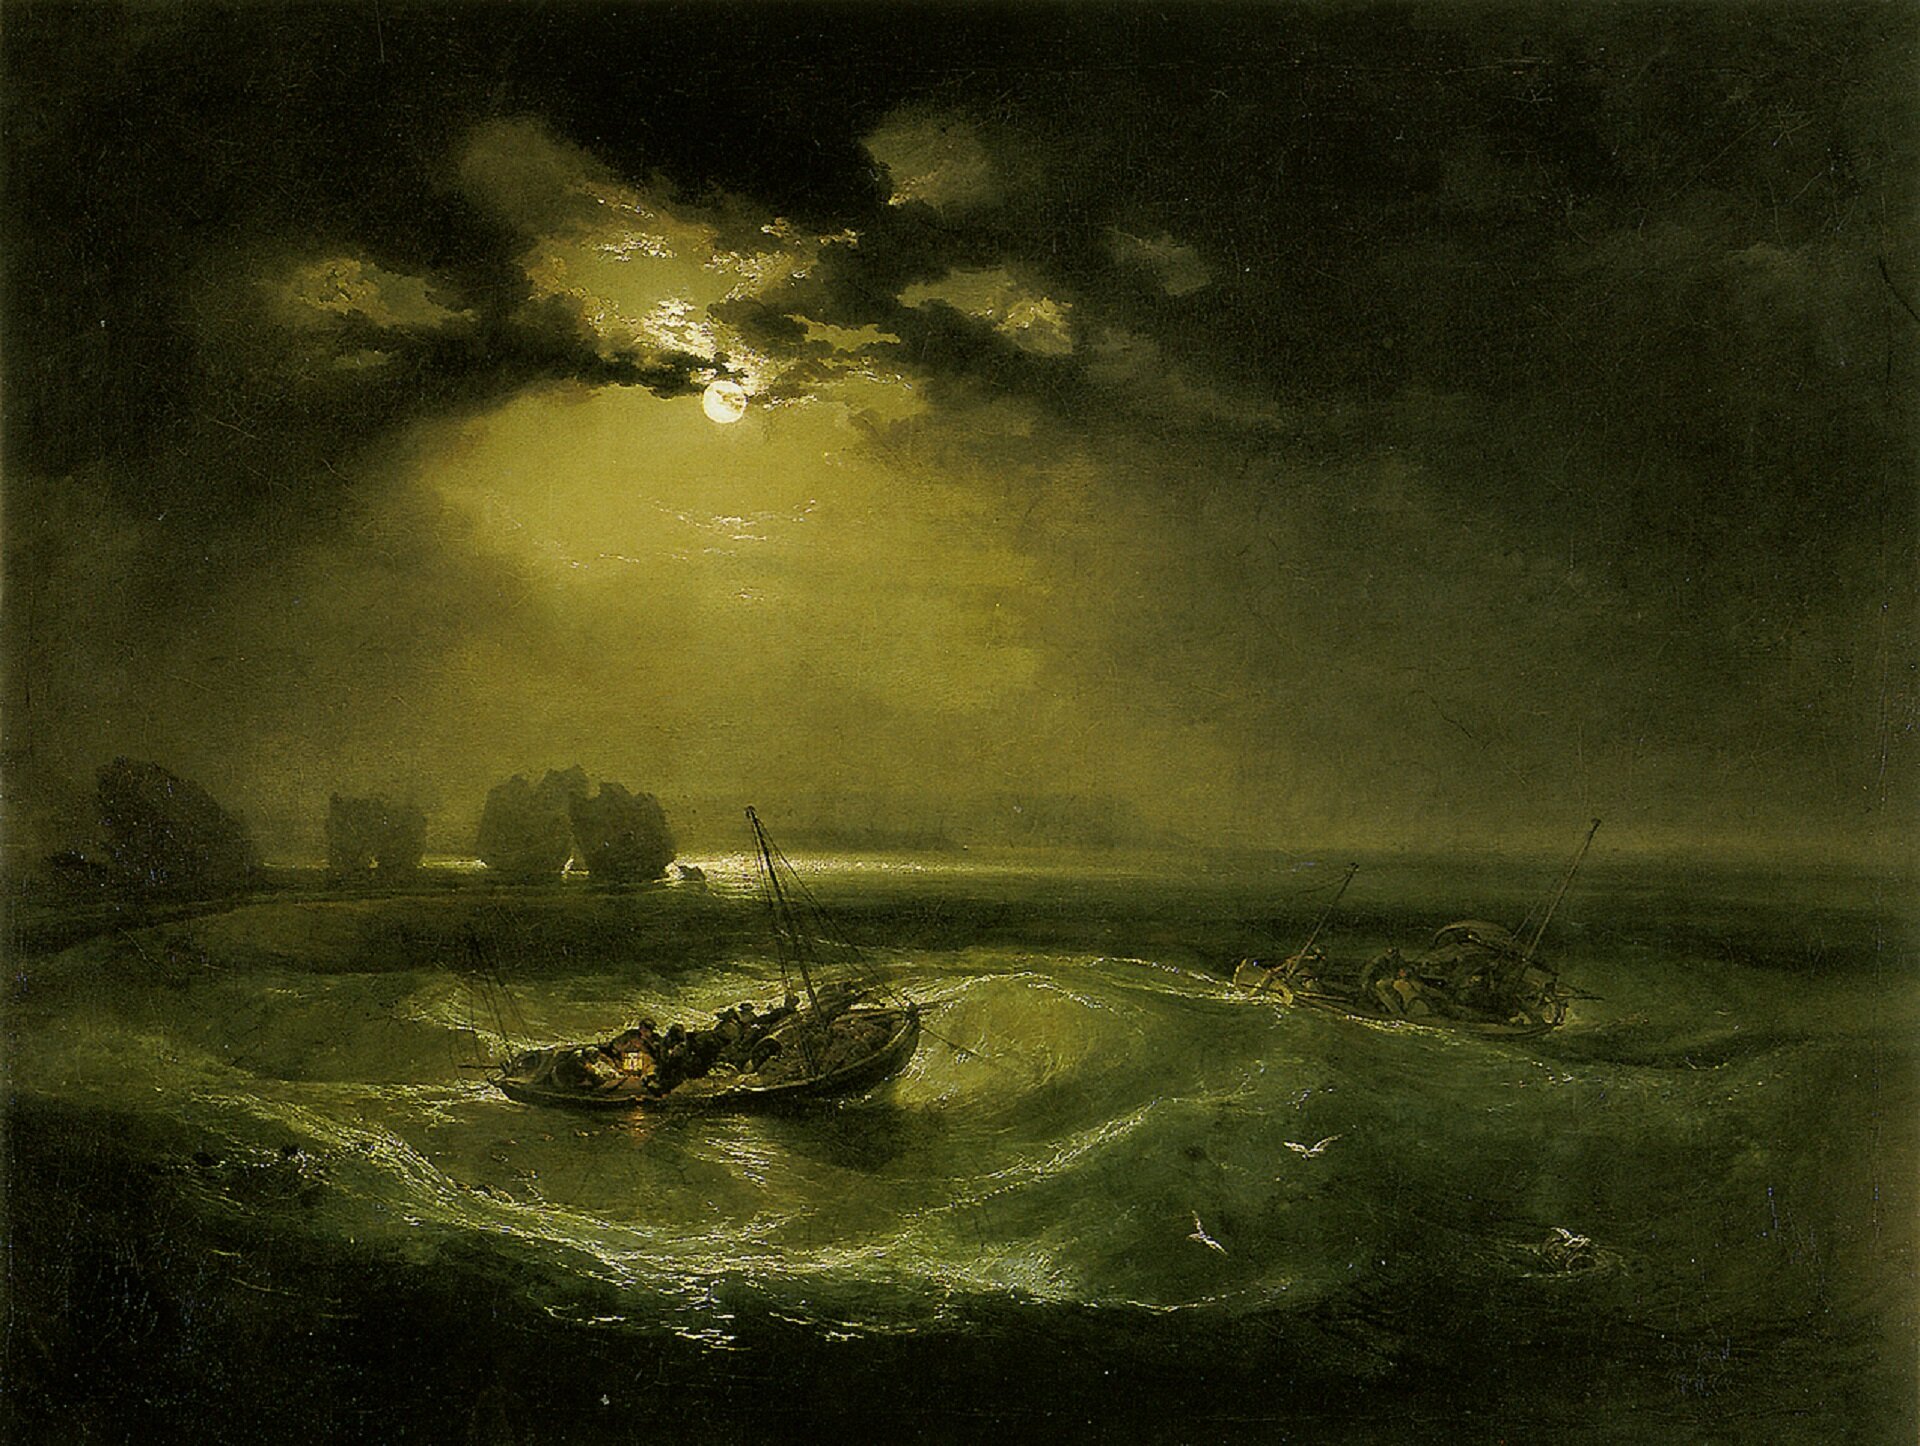 Ilustracja przedstawia obraz Williama Turnera „Rybacy na morzu”. Ukazuje rybacką łódź podczas sztormu. Łódź przechyla się niesiona przez wysokie fale. Promienie księżyca, wyłaniające się zza ciemnych chmur rozświetlają niebo, odbijają się w falach i skupiają się na maleńkiej migoczącej lampce, znajdującej się na pokładzie łodzi rybackiej, znajdującej się w centrum kompozycji. Po lewej stronie znajdują się postrzępione sylwetki skał.